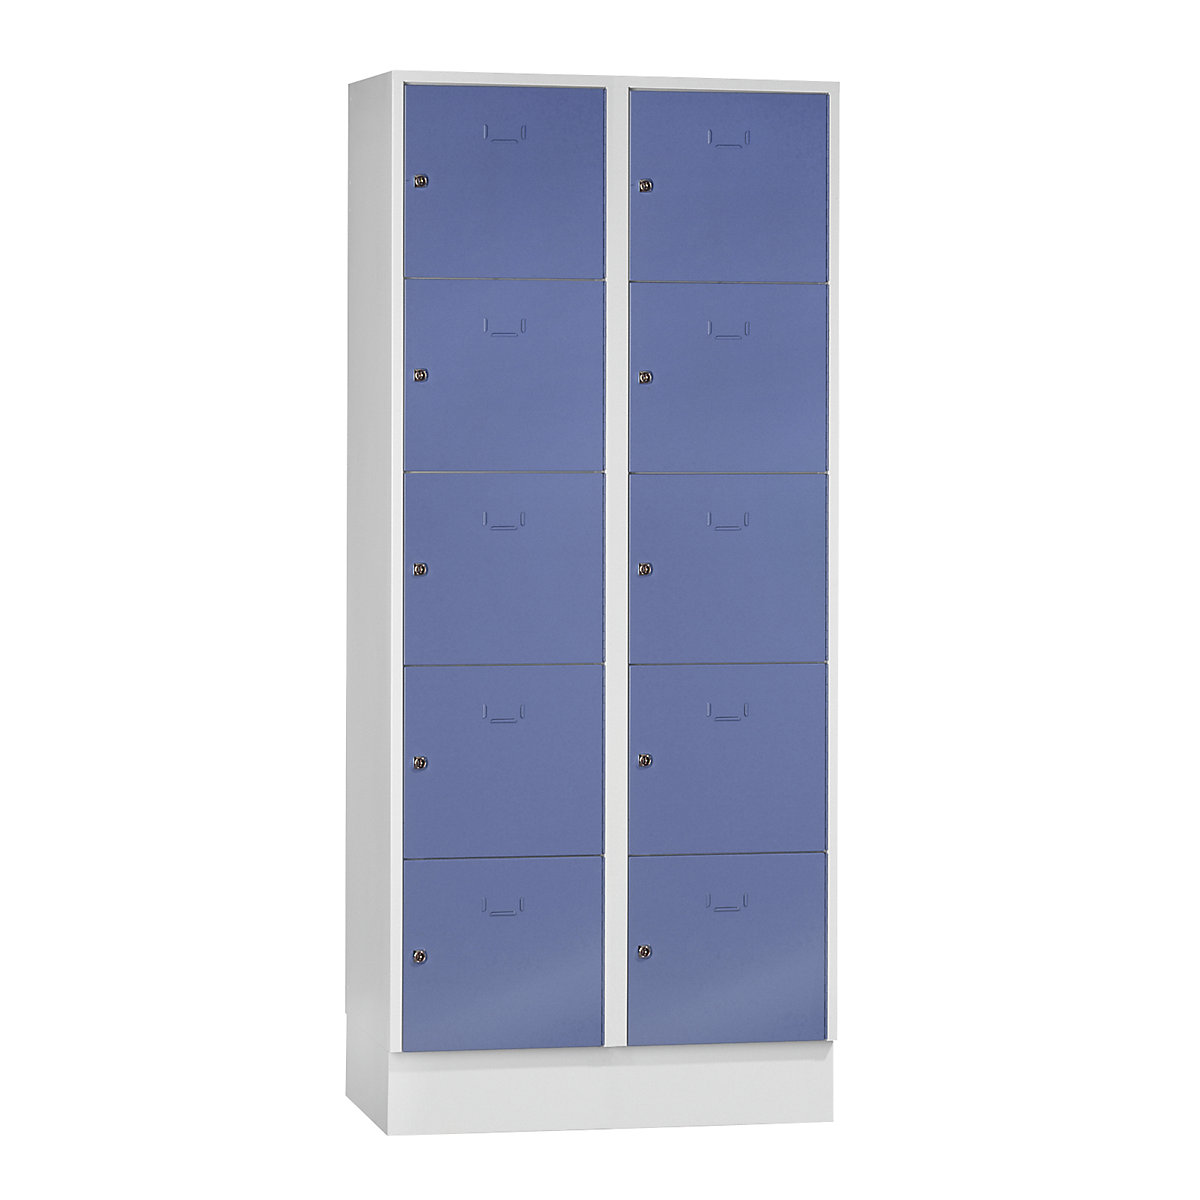 Wolf – Vestiaire modulaire à casiers verrouillables, 10 casiers, largeur 400 mm, bleu pigeon / gris clair